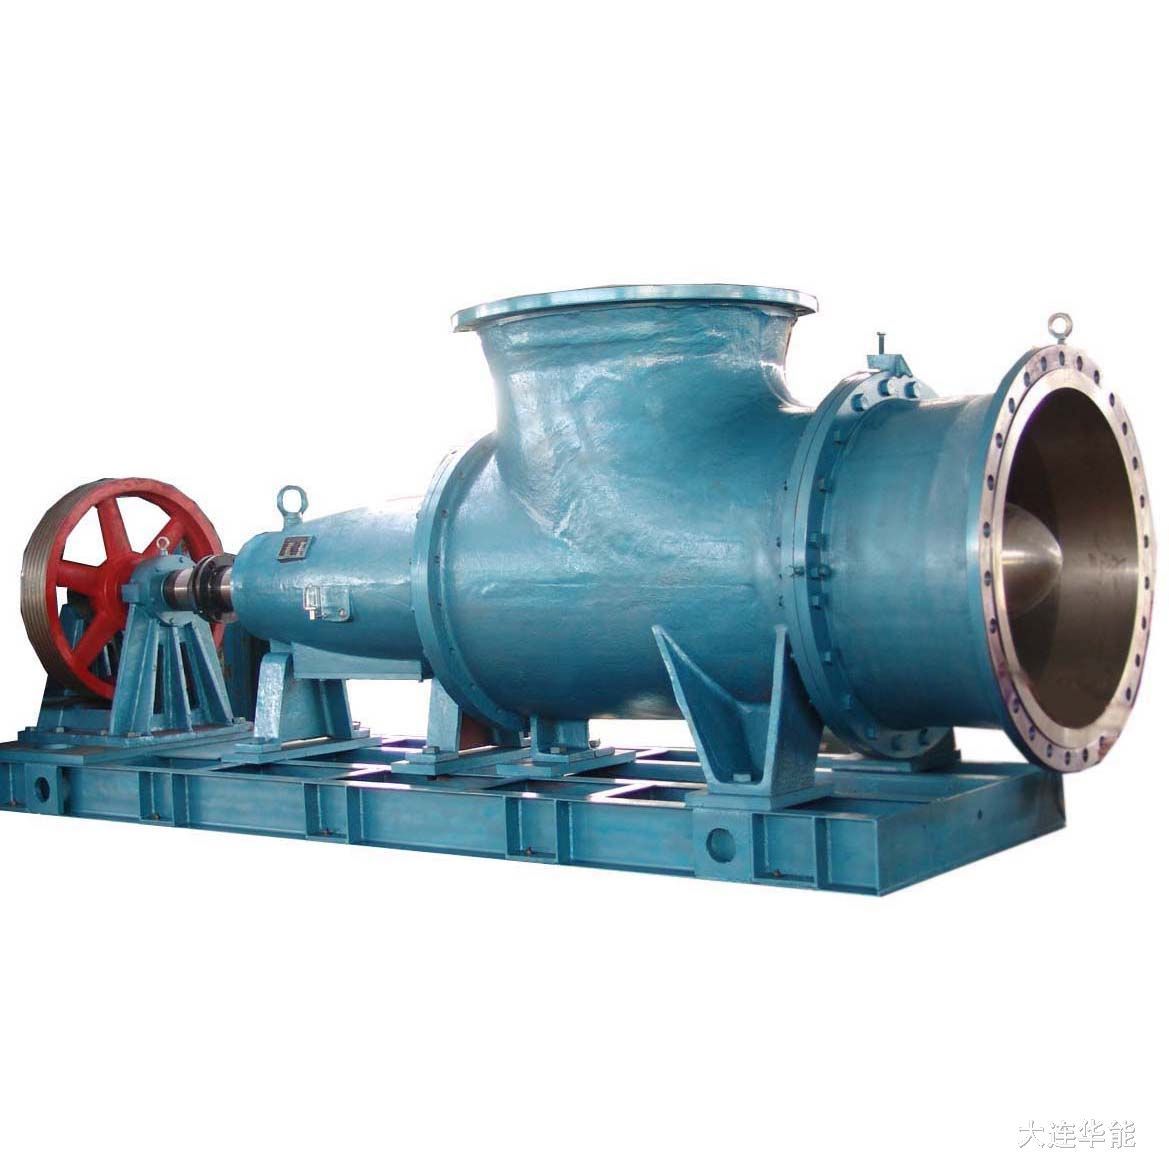 天津中蓝轴流泵QHB系列潜水混流泵生产厂家型号大全-环保在线